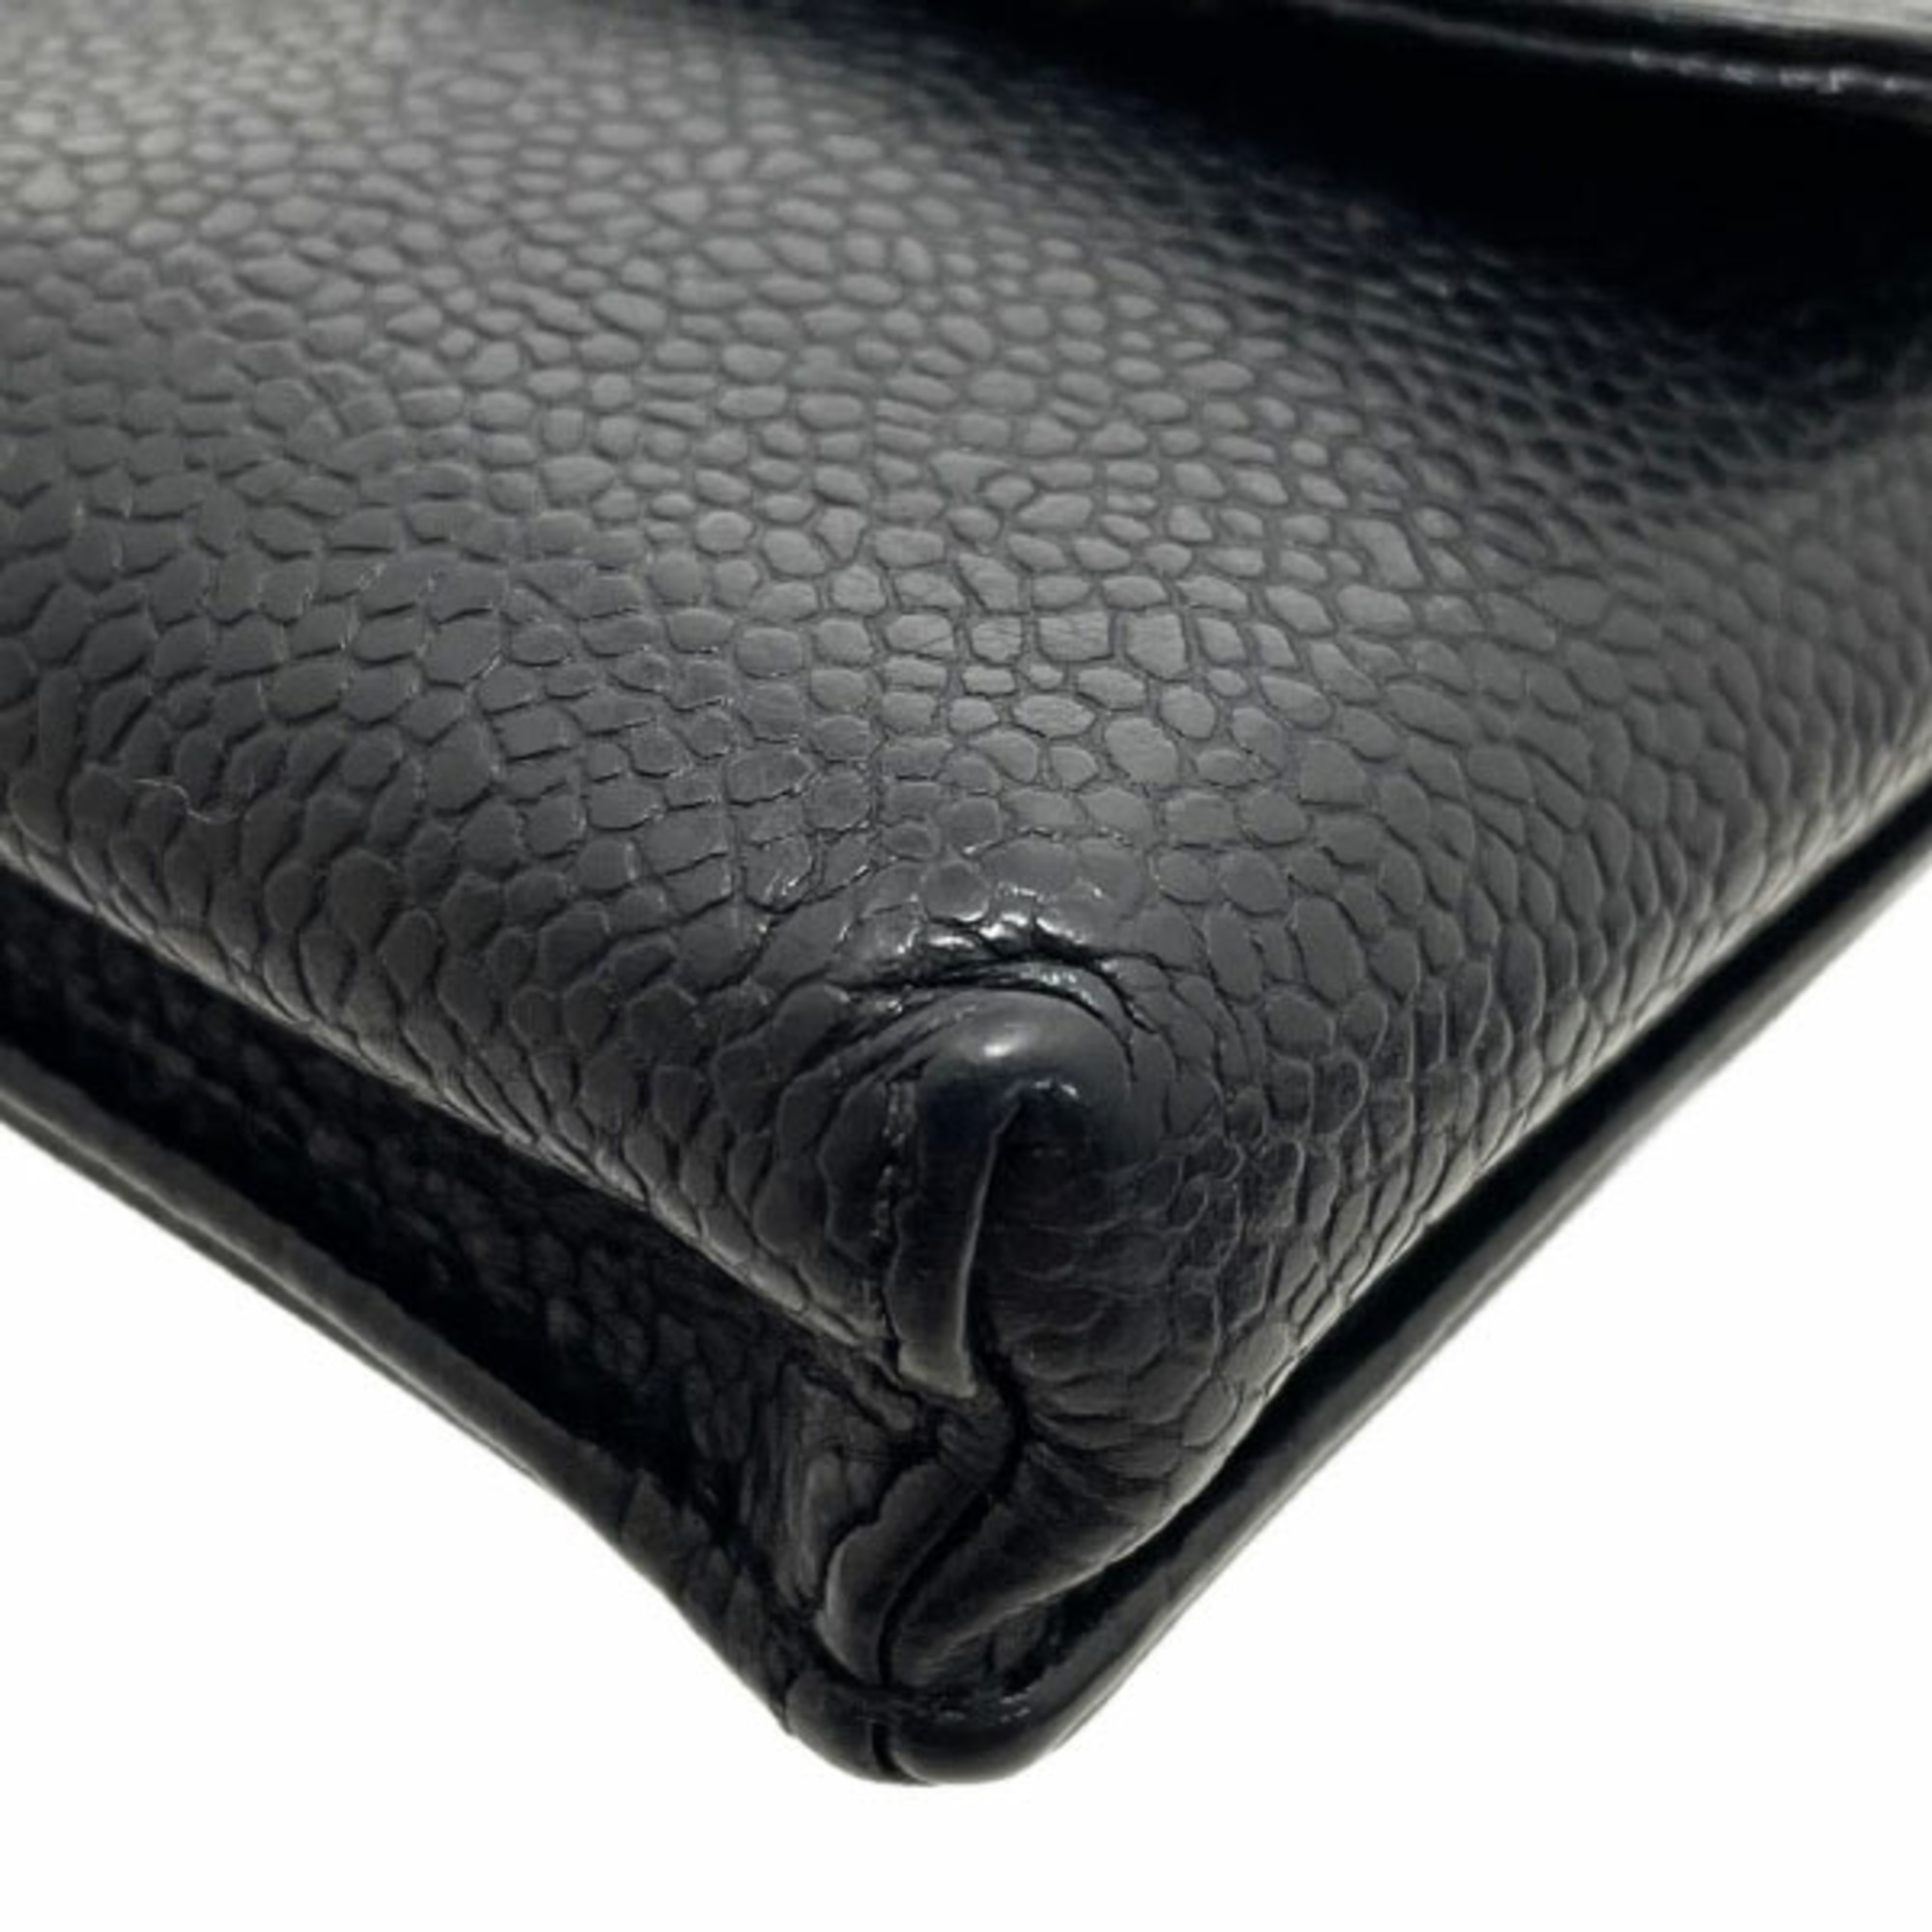 CHANEL Cigarette Case Coco Mark Caviar Skin Leather Black A13511 iQOS RR-13299